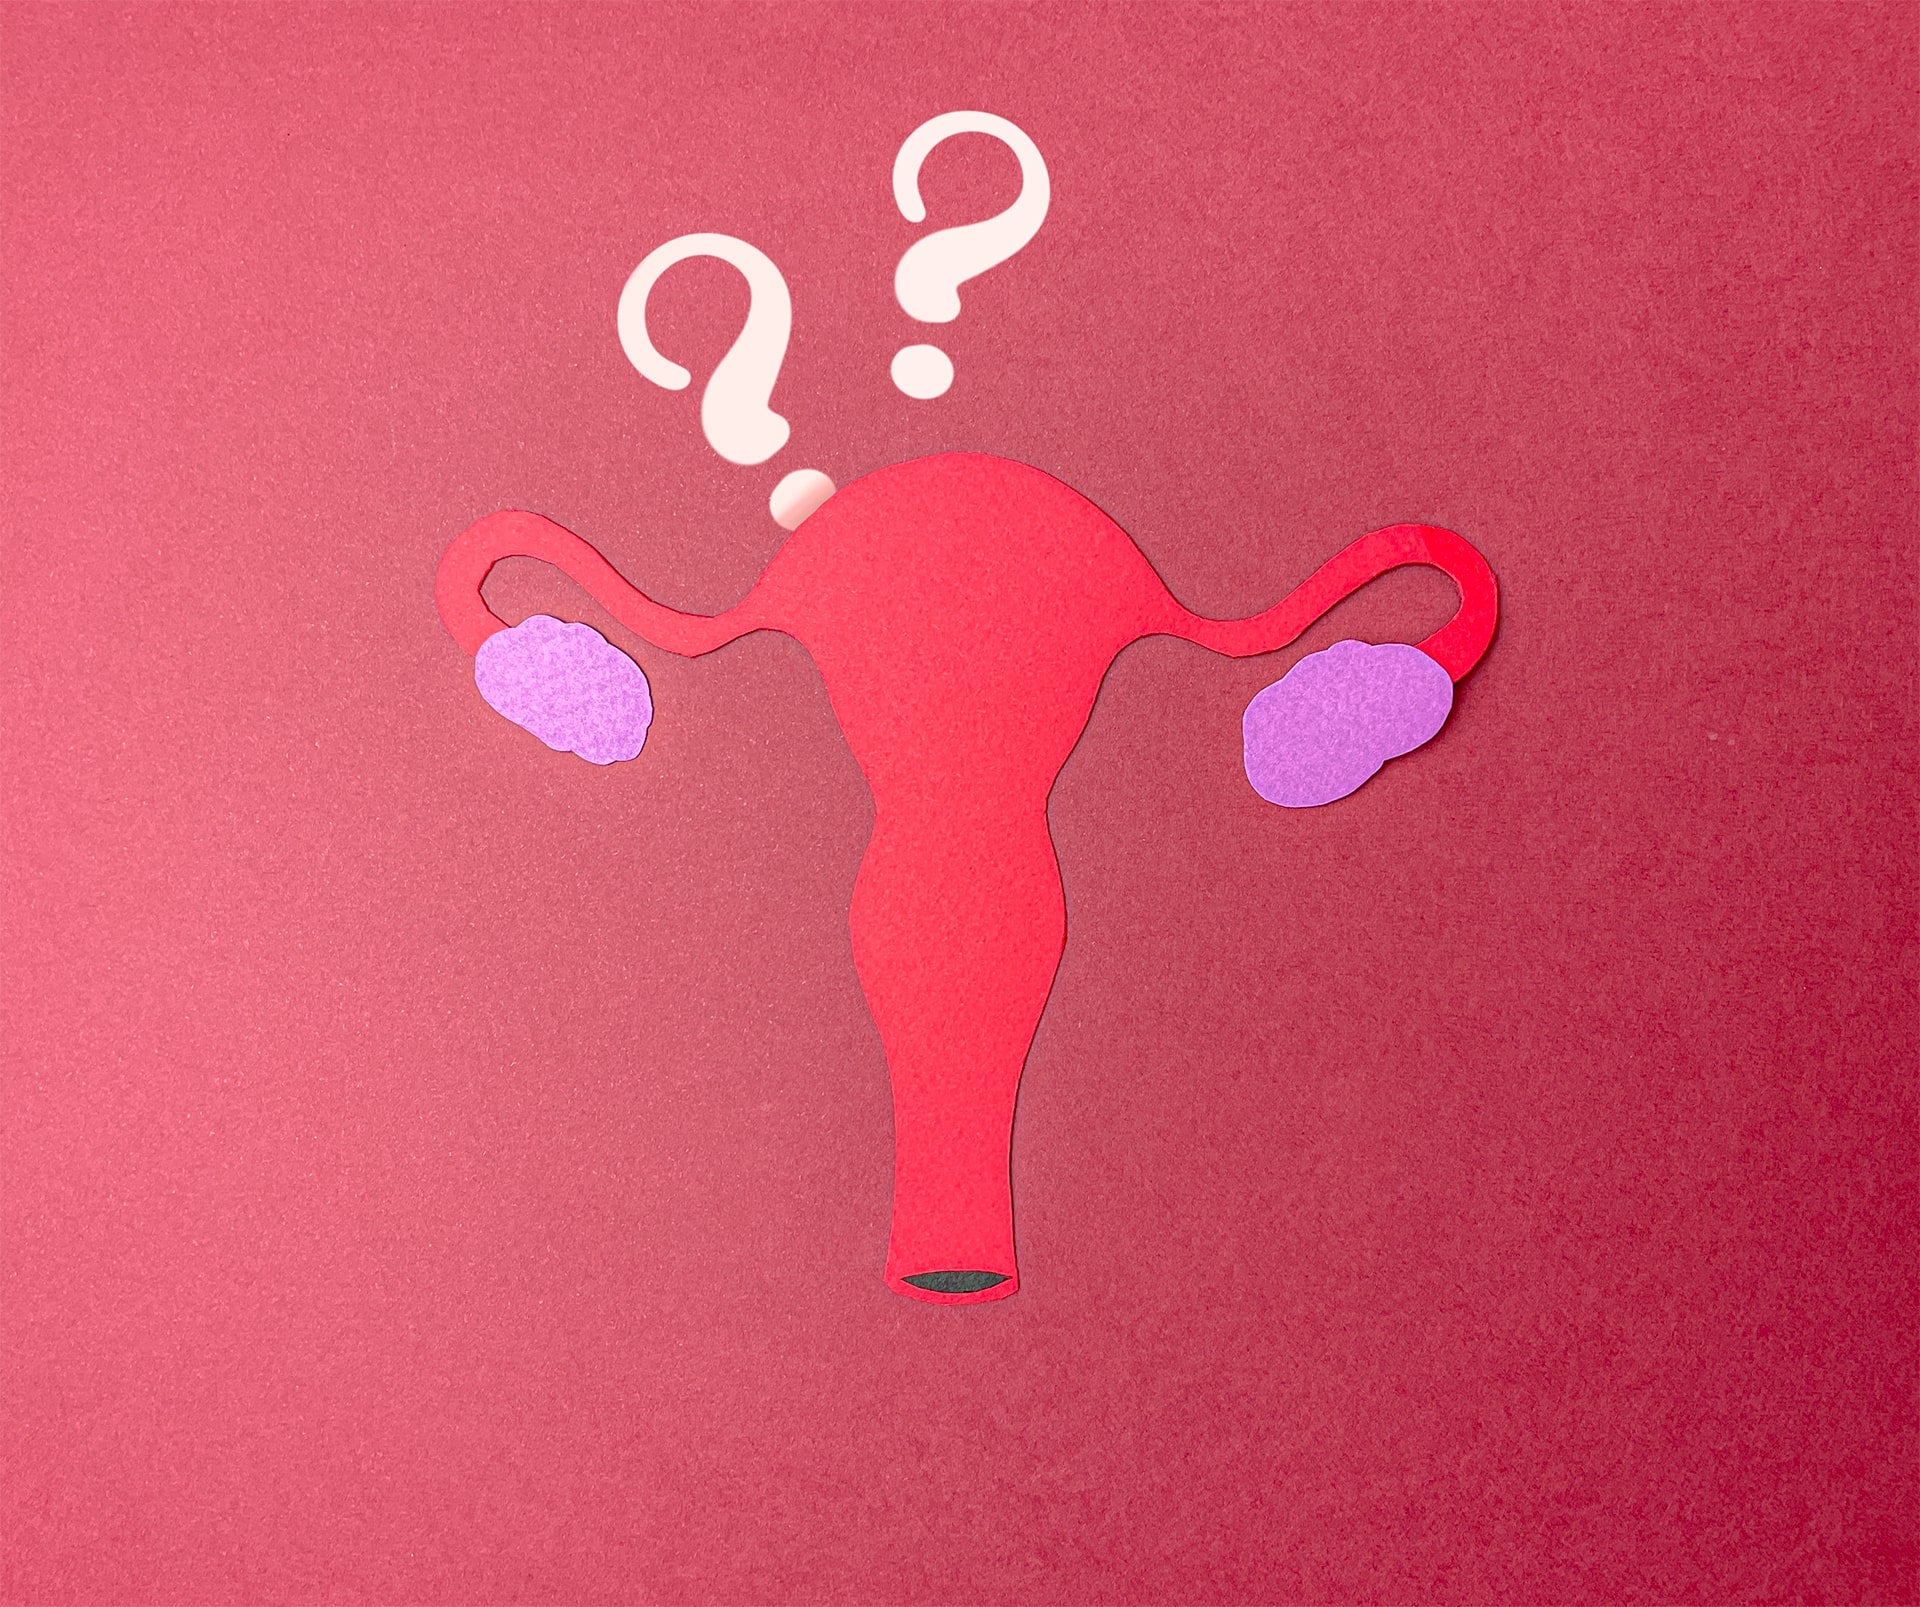 utiliser cup menstruelle coupe menstruelle uterus retroversé luneale possible possibilité